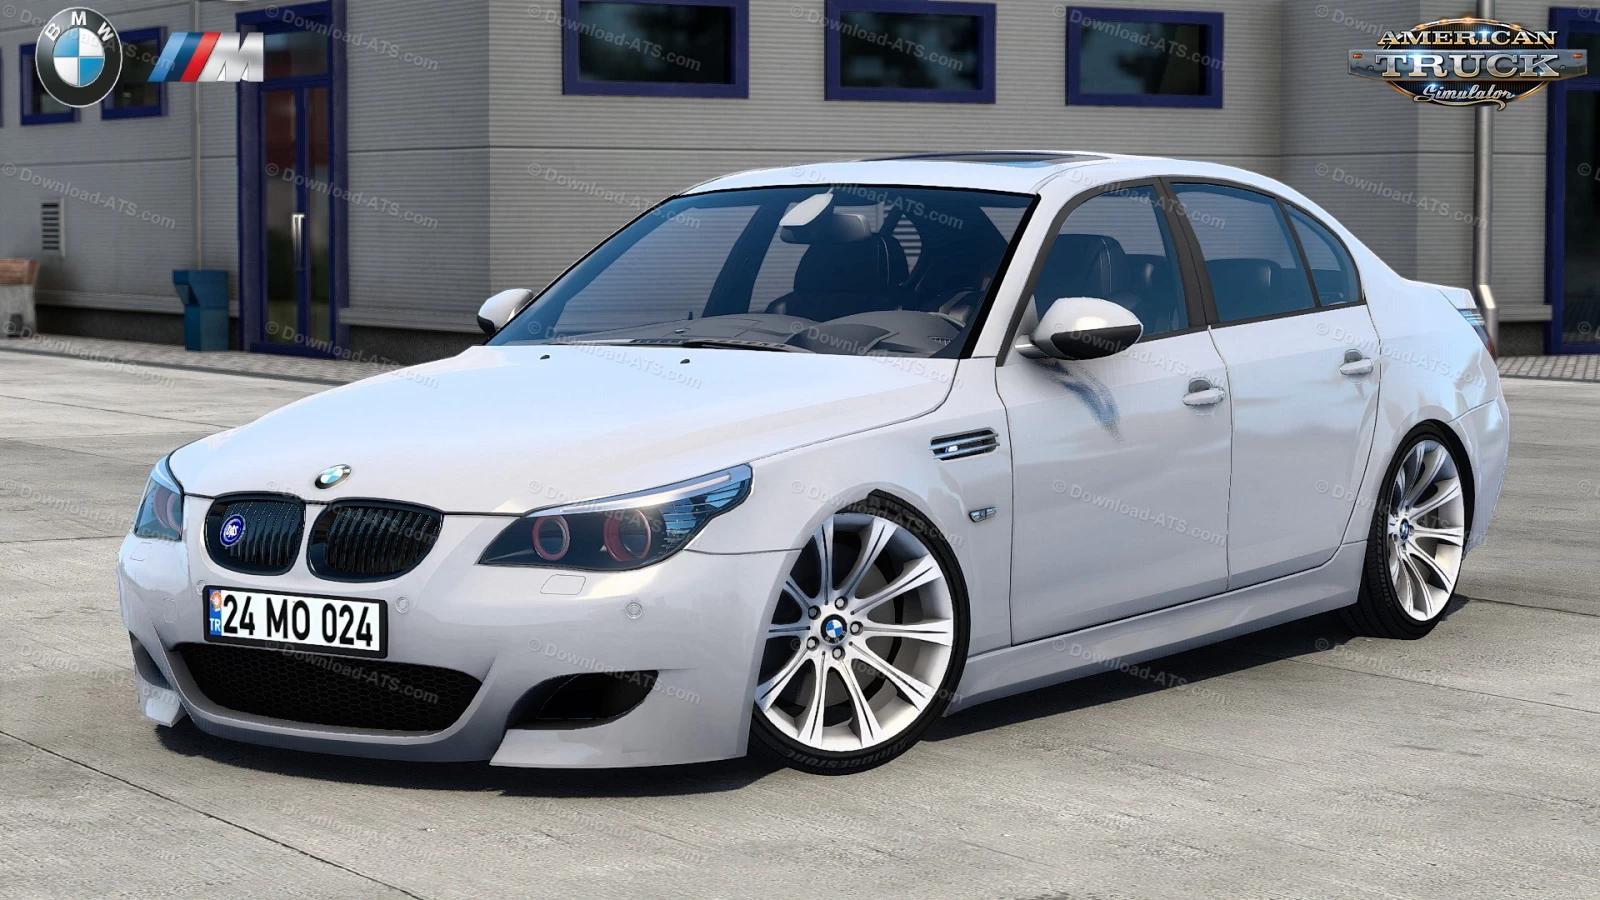 BMW M5 E60 + Interior v1.3 (1.46.x) for ATS